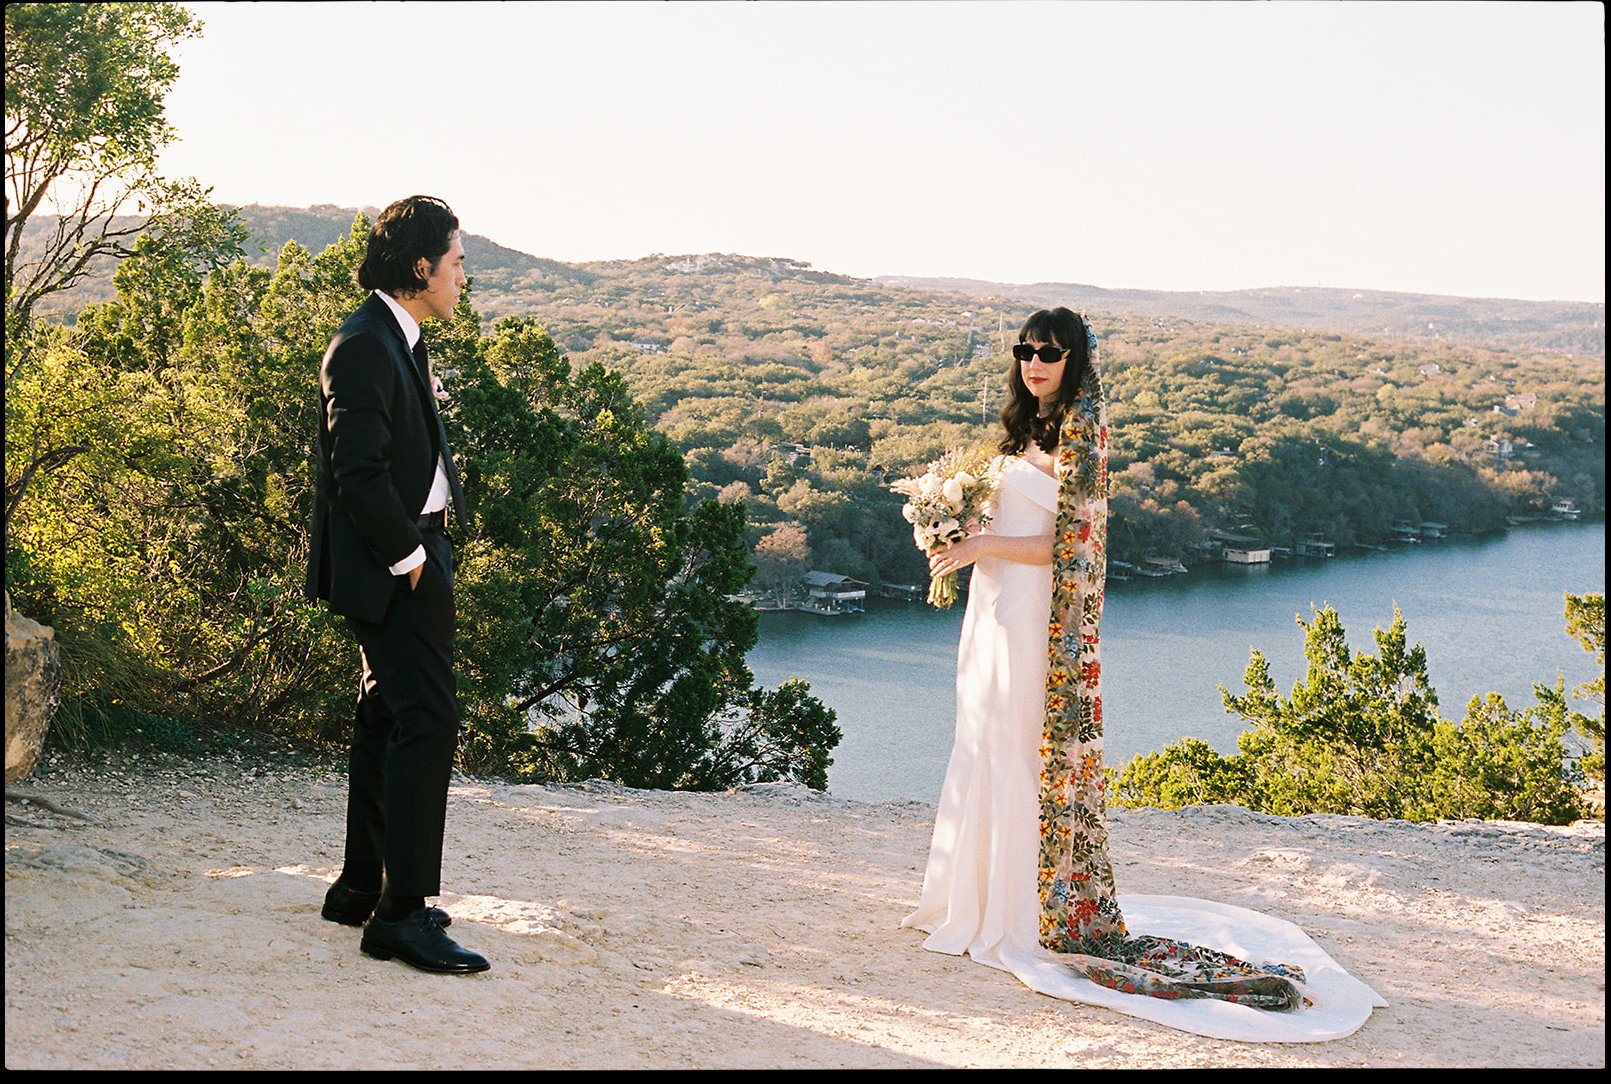 Best-Austin-Wedding-Photographers-Elopement-Film-35mm-Asheville-Santa-Barbara-Laguna-Gloria-20.jpg